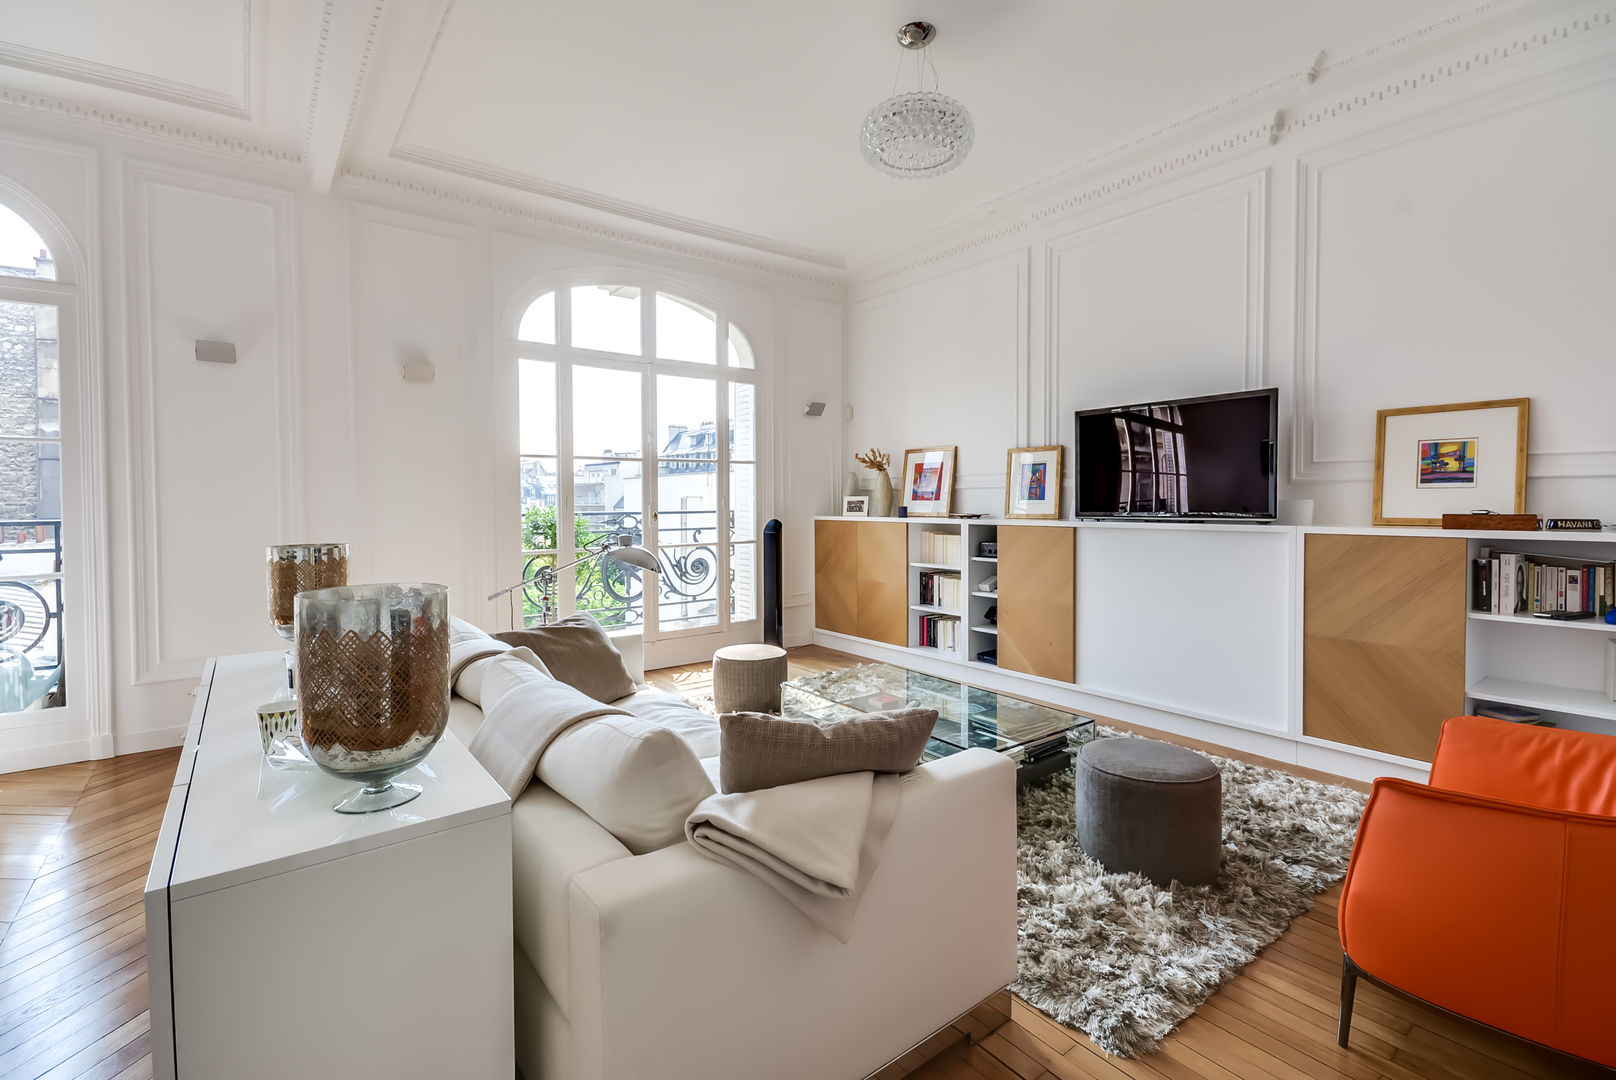 Un appartement haussmanien revisité - Paris 16e, ATELIER FB ATELIER FB Moderne Wohnzimmer